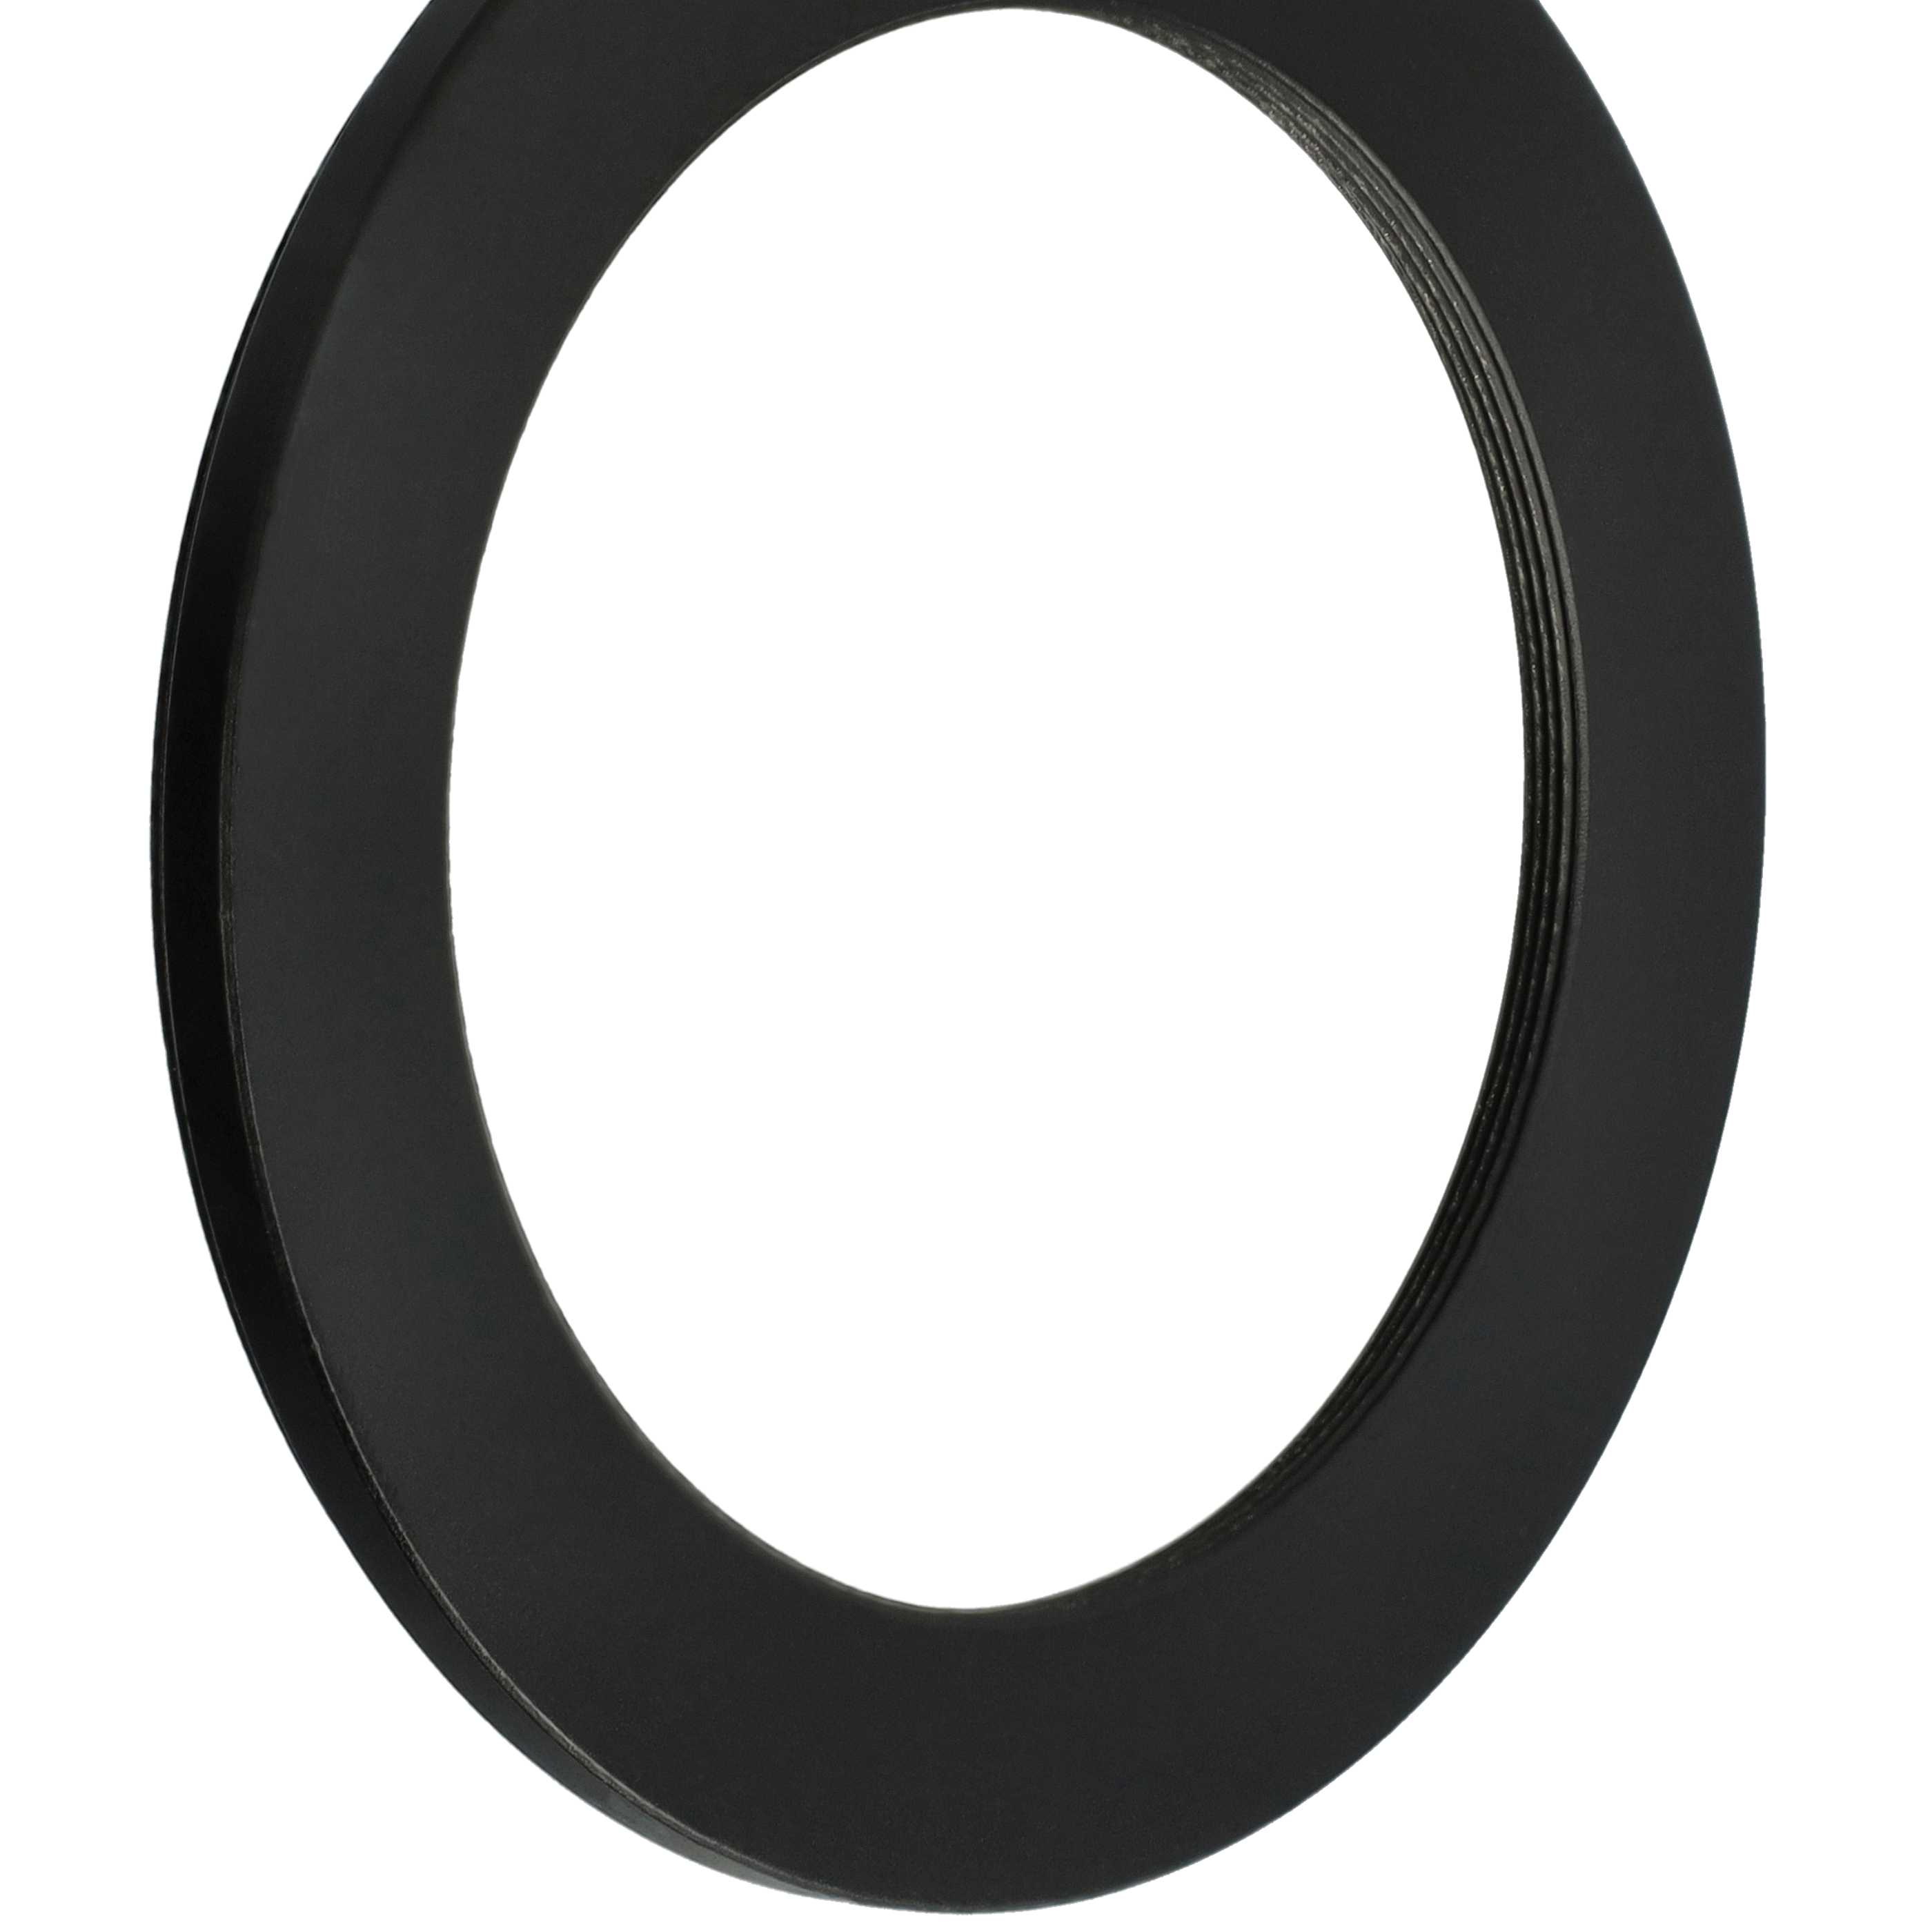 Anillo adaptador Step Down de 82 mm a 62 mm para objetivo de la cámara - Adaptador de filtro, metal, negro